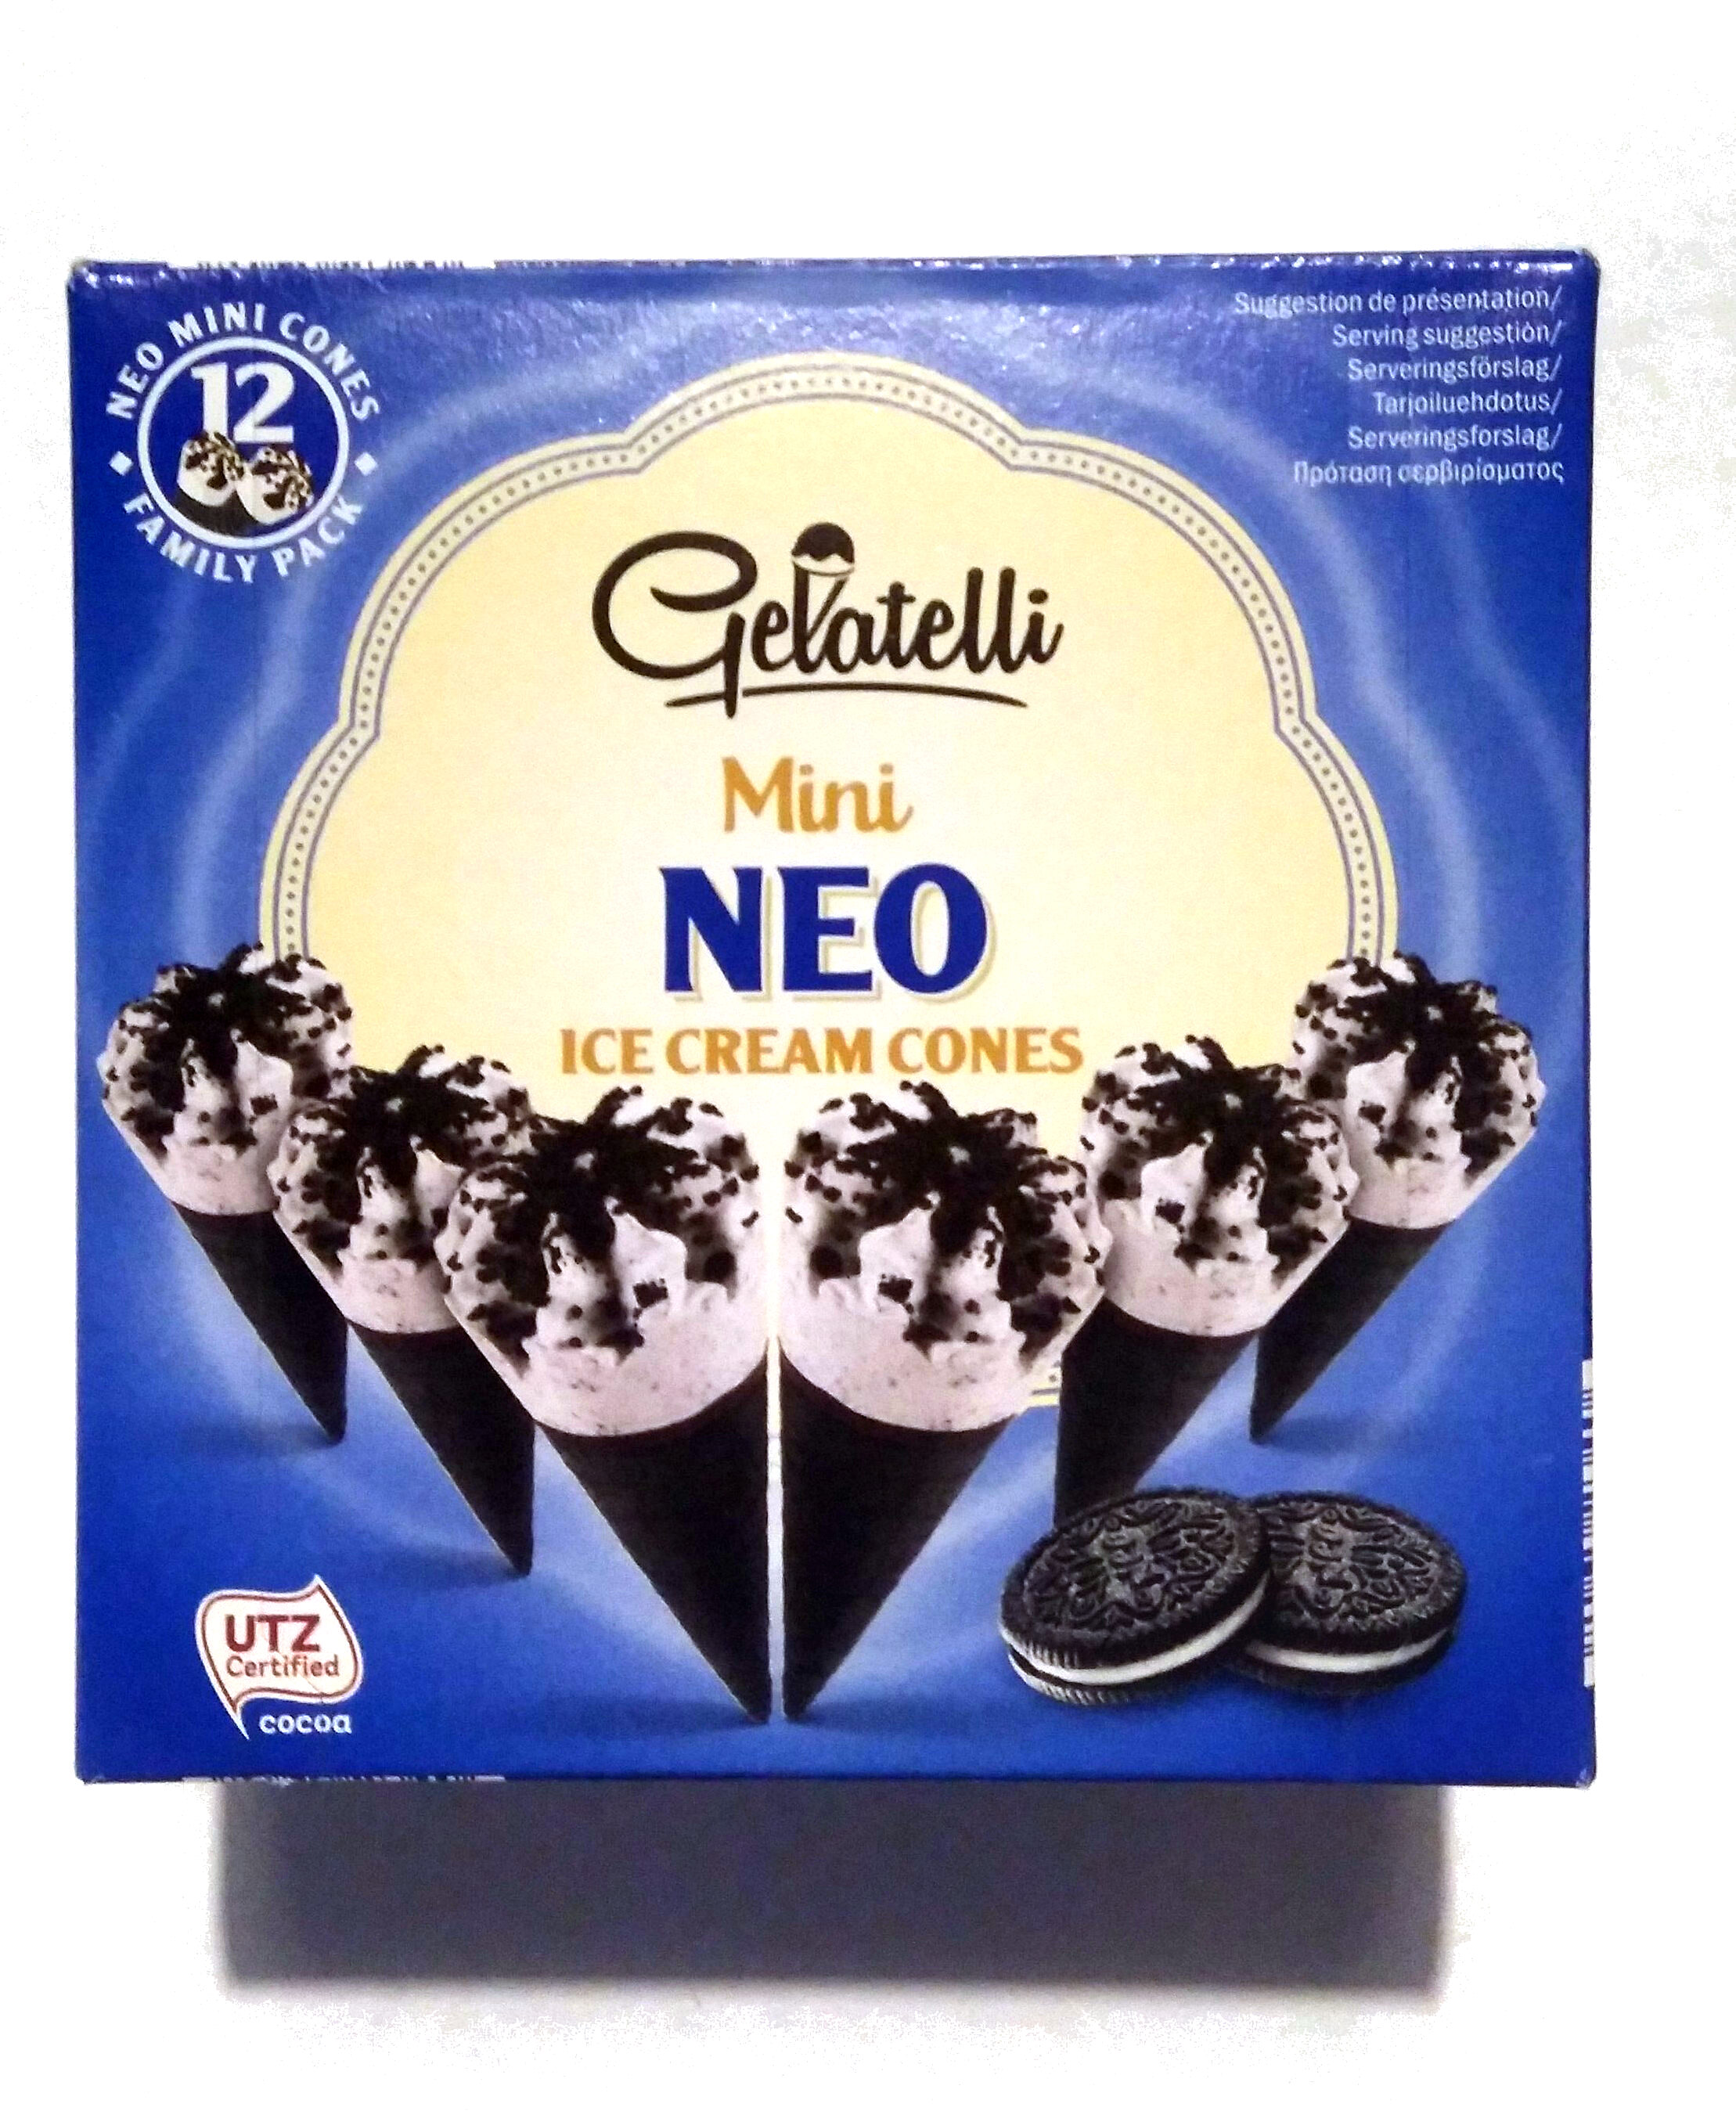 Mini NEO Ice Cream Cones - Produkt